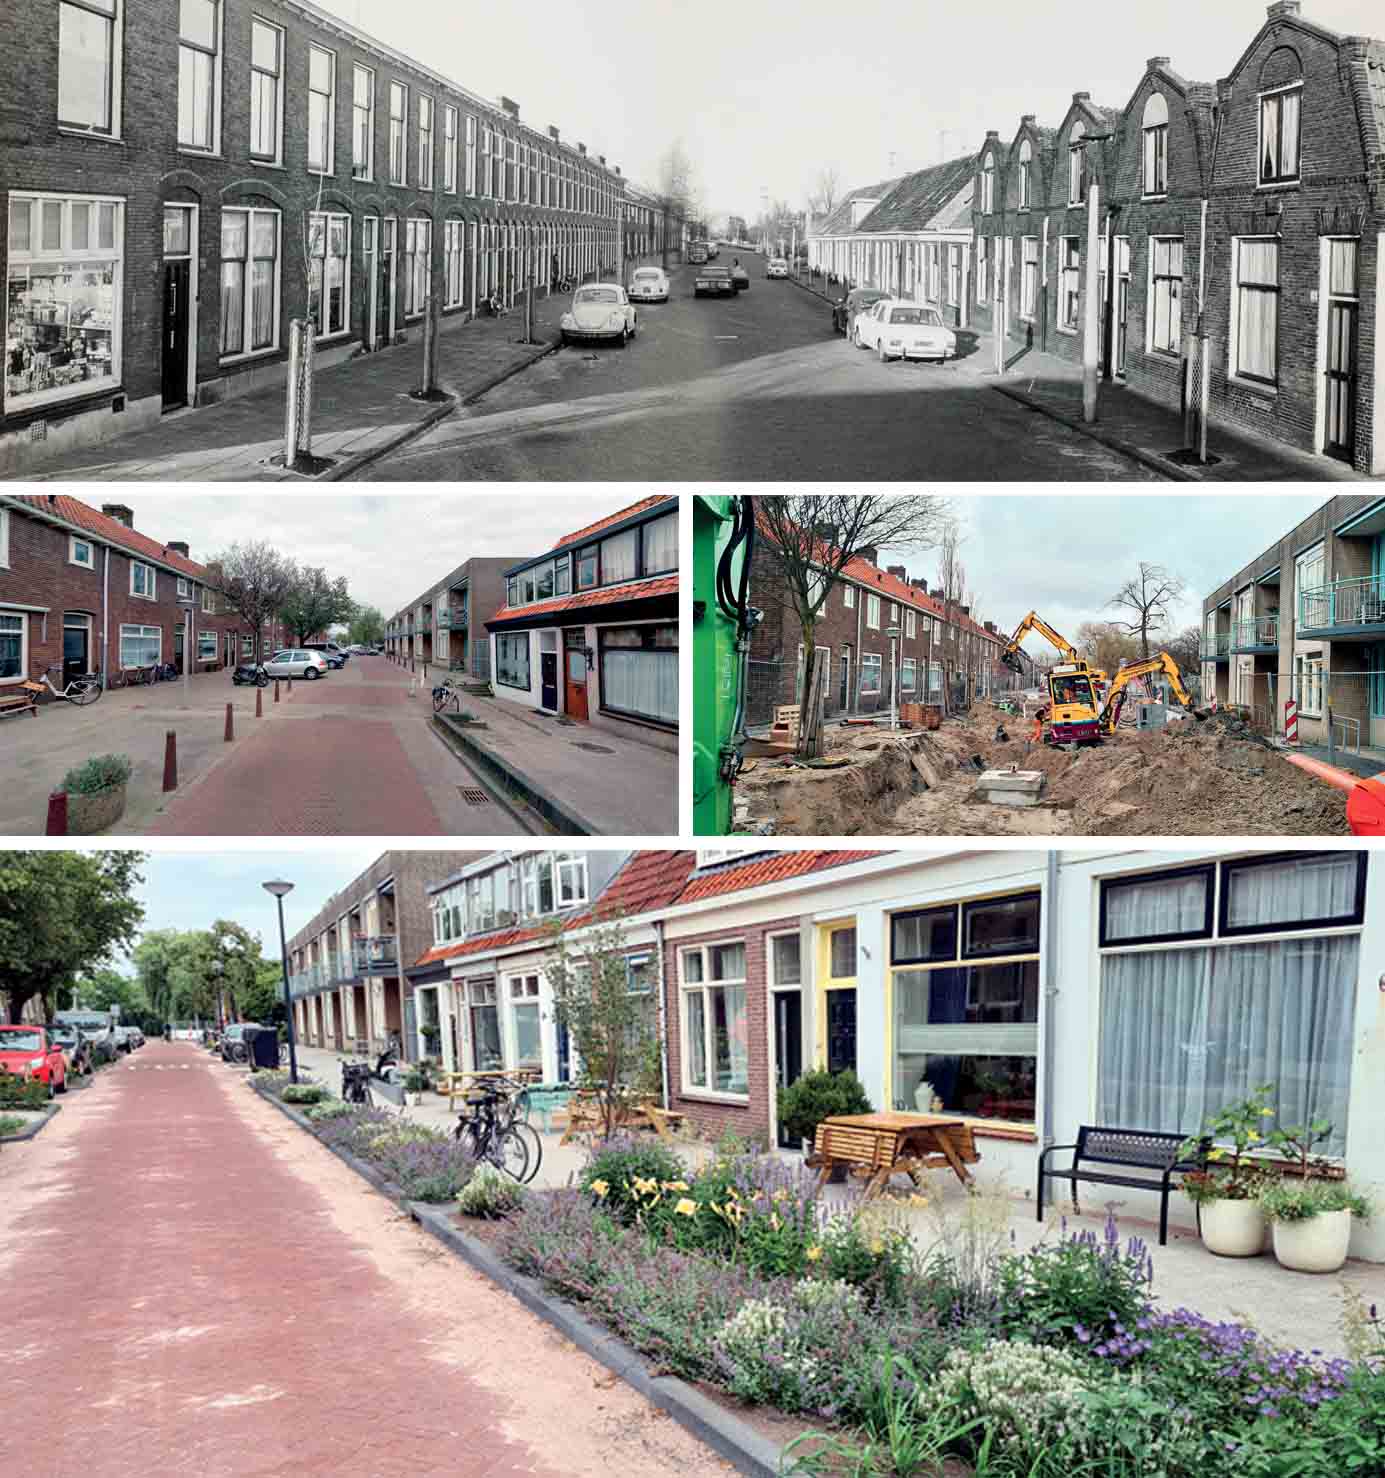 saving-leiden-floods-julianastraat-1970s-previous-situation-noorderkwarter-oost-sewage-work-progress-new